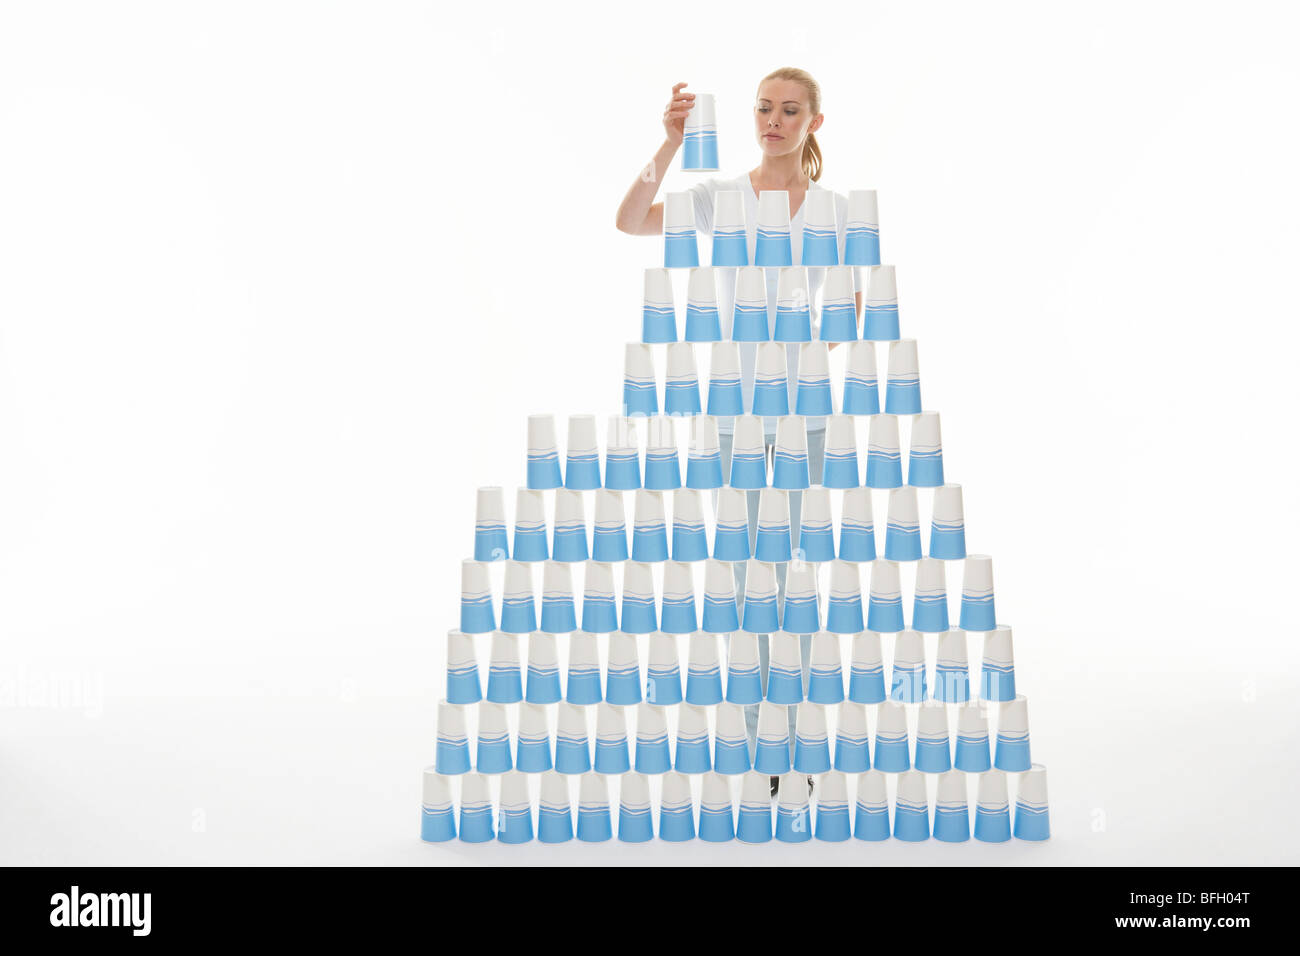 Frau Stapeln Plastikbecher in Pyramide vor weißem Hintergrund Stockfoto